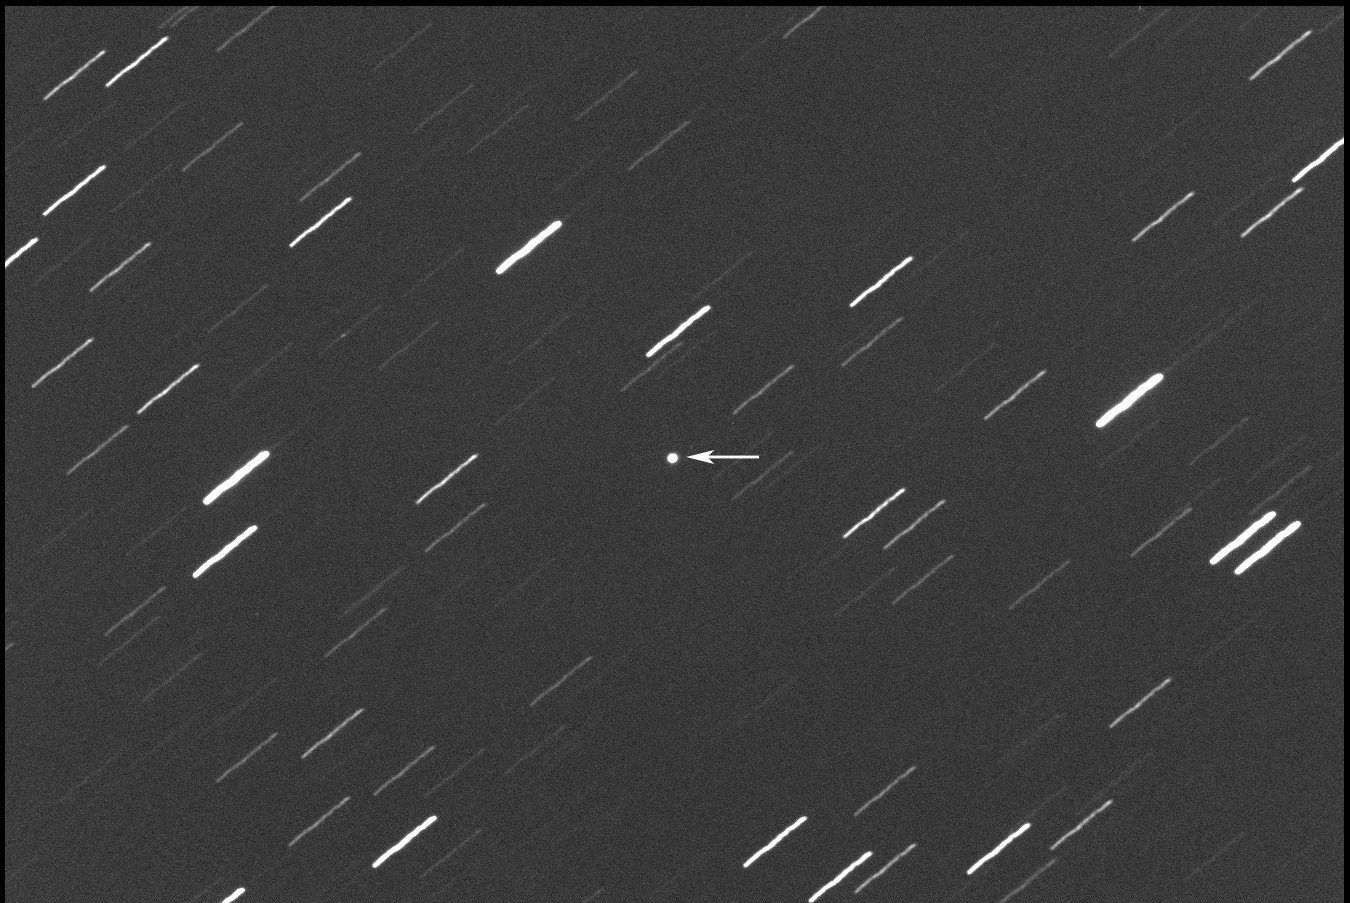 the asteroid (7335) 1989 JA